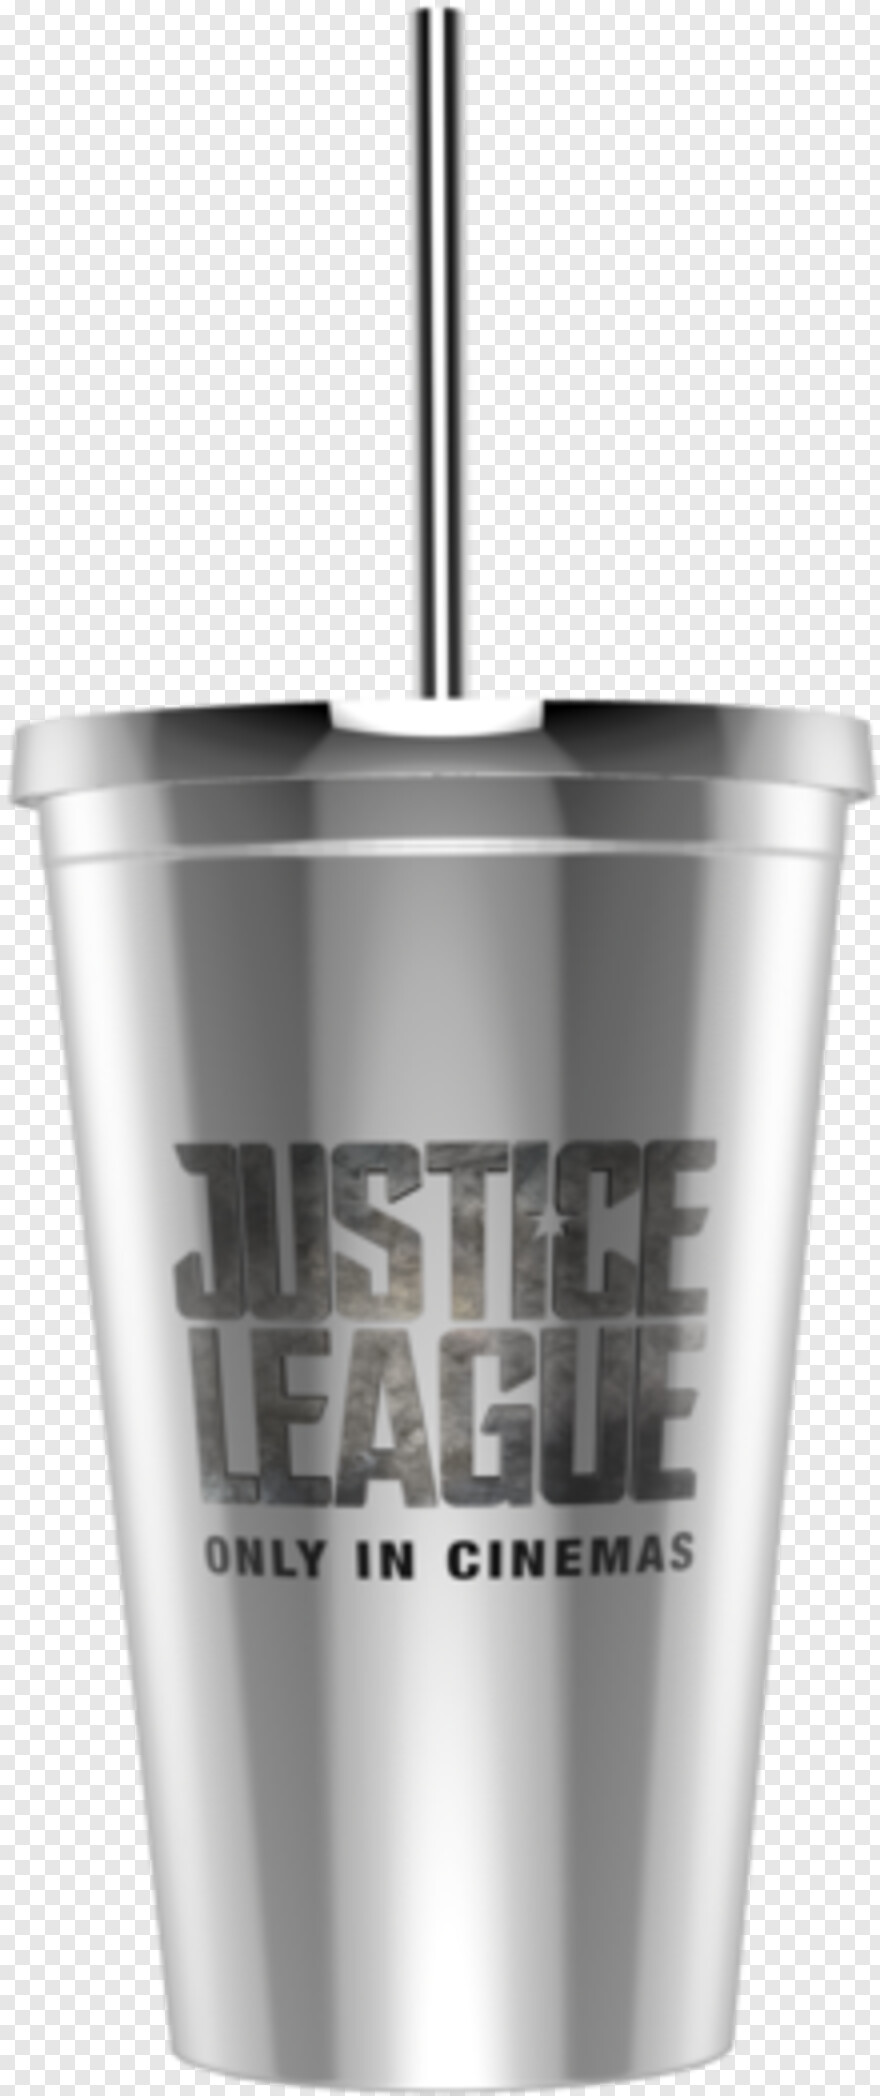 justice-league # 495430